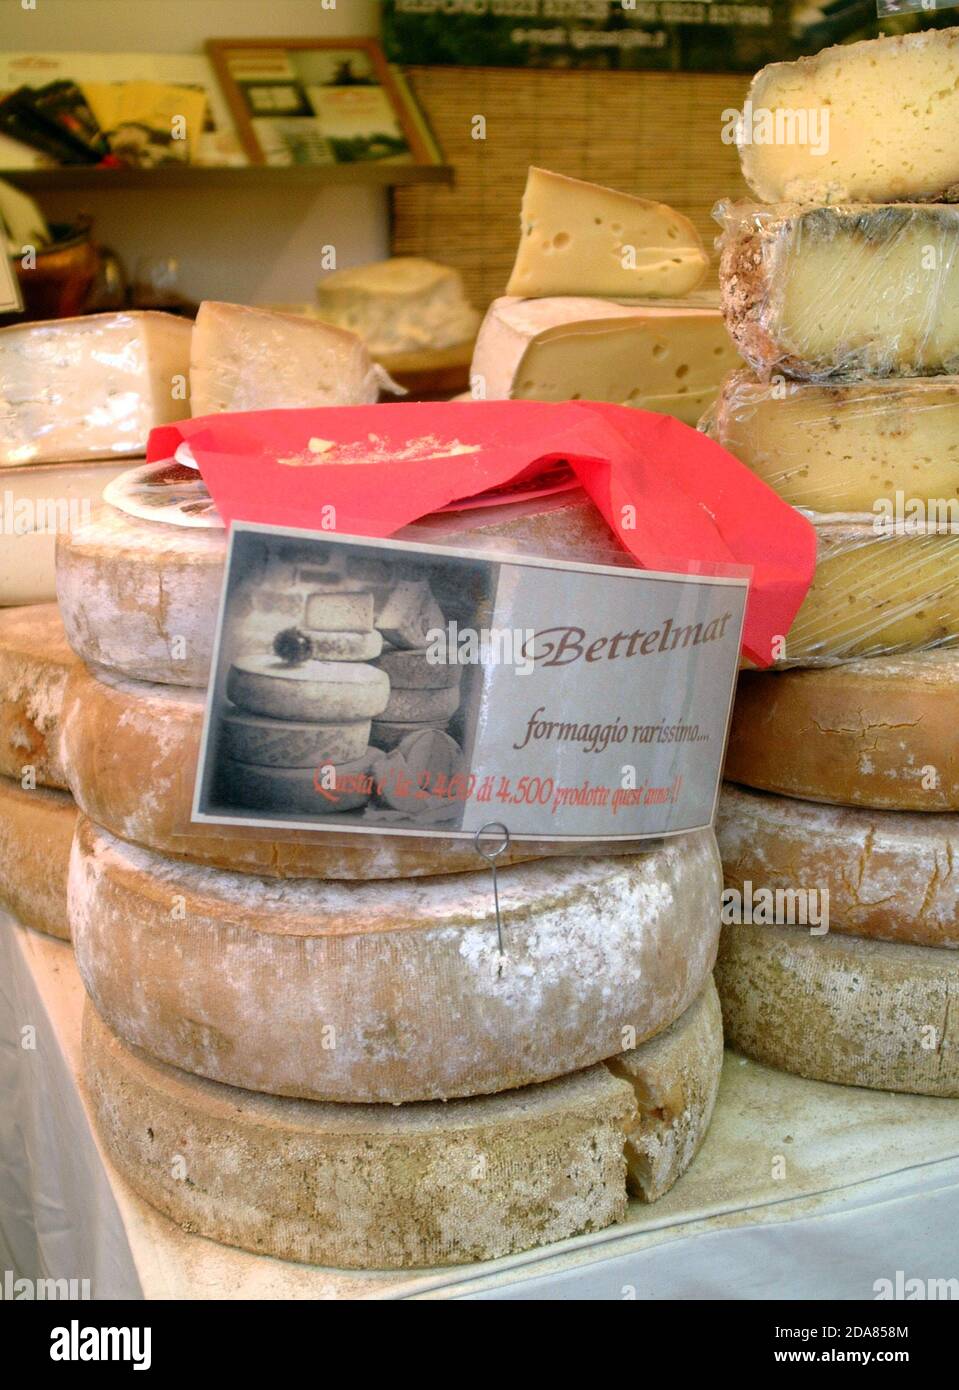 Turin, Piemont, Italien. -10/22/2010- die Lebensmittelmesse 'Salone del Gusto'. Bettelmatt Käse. Stockfoto